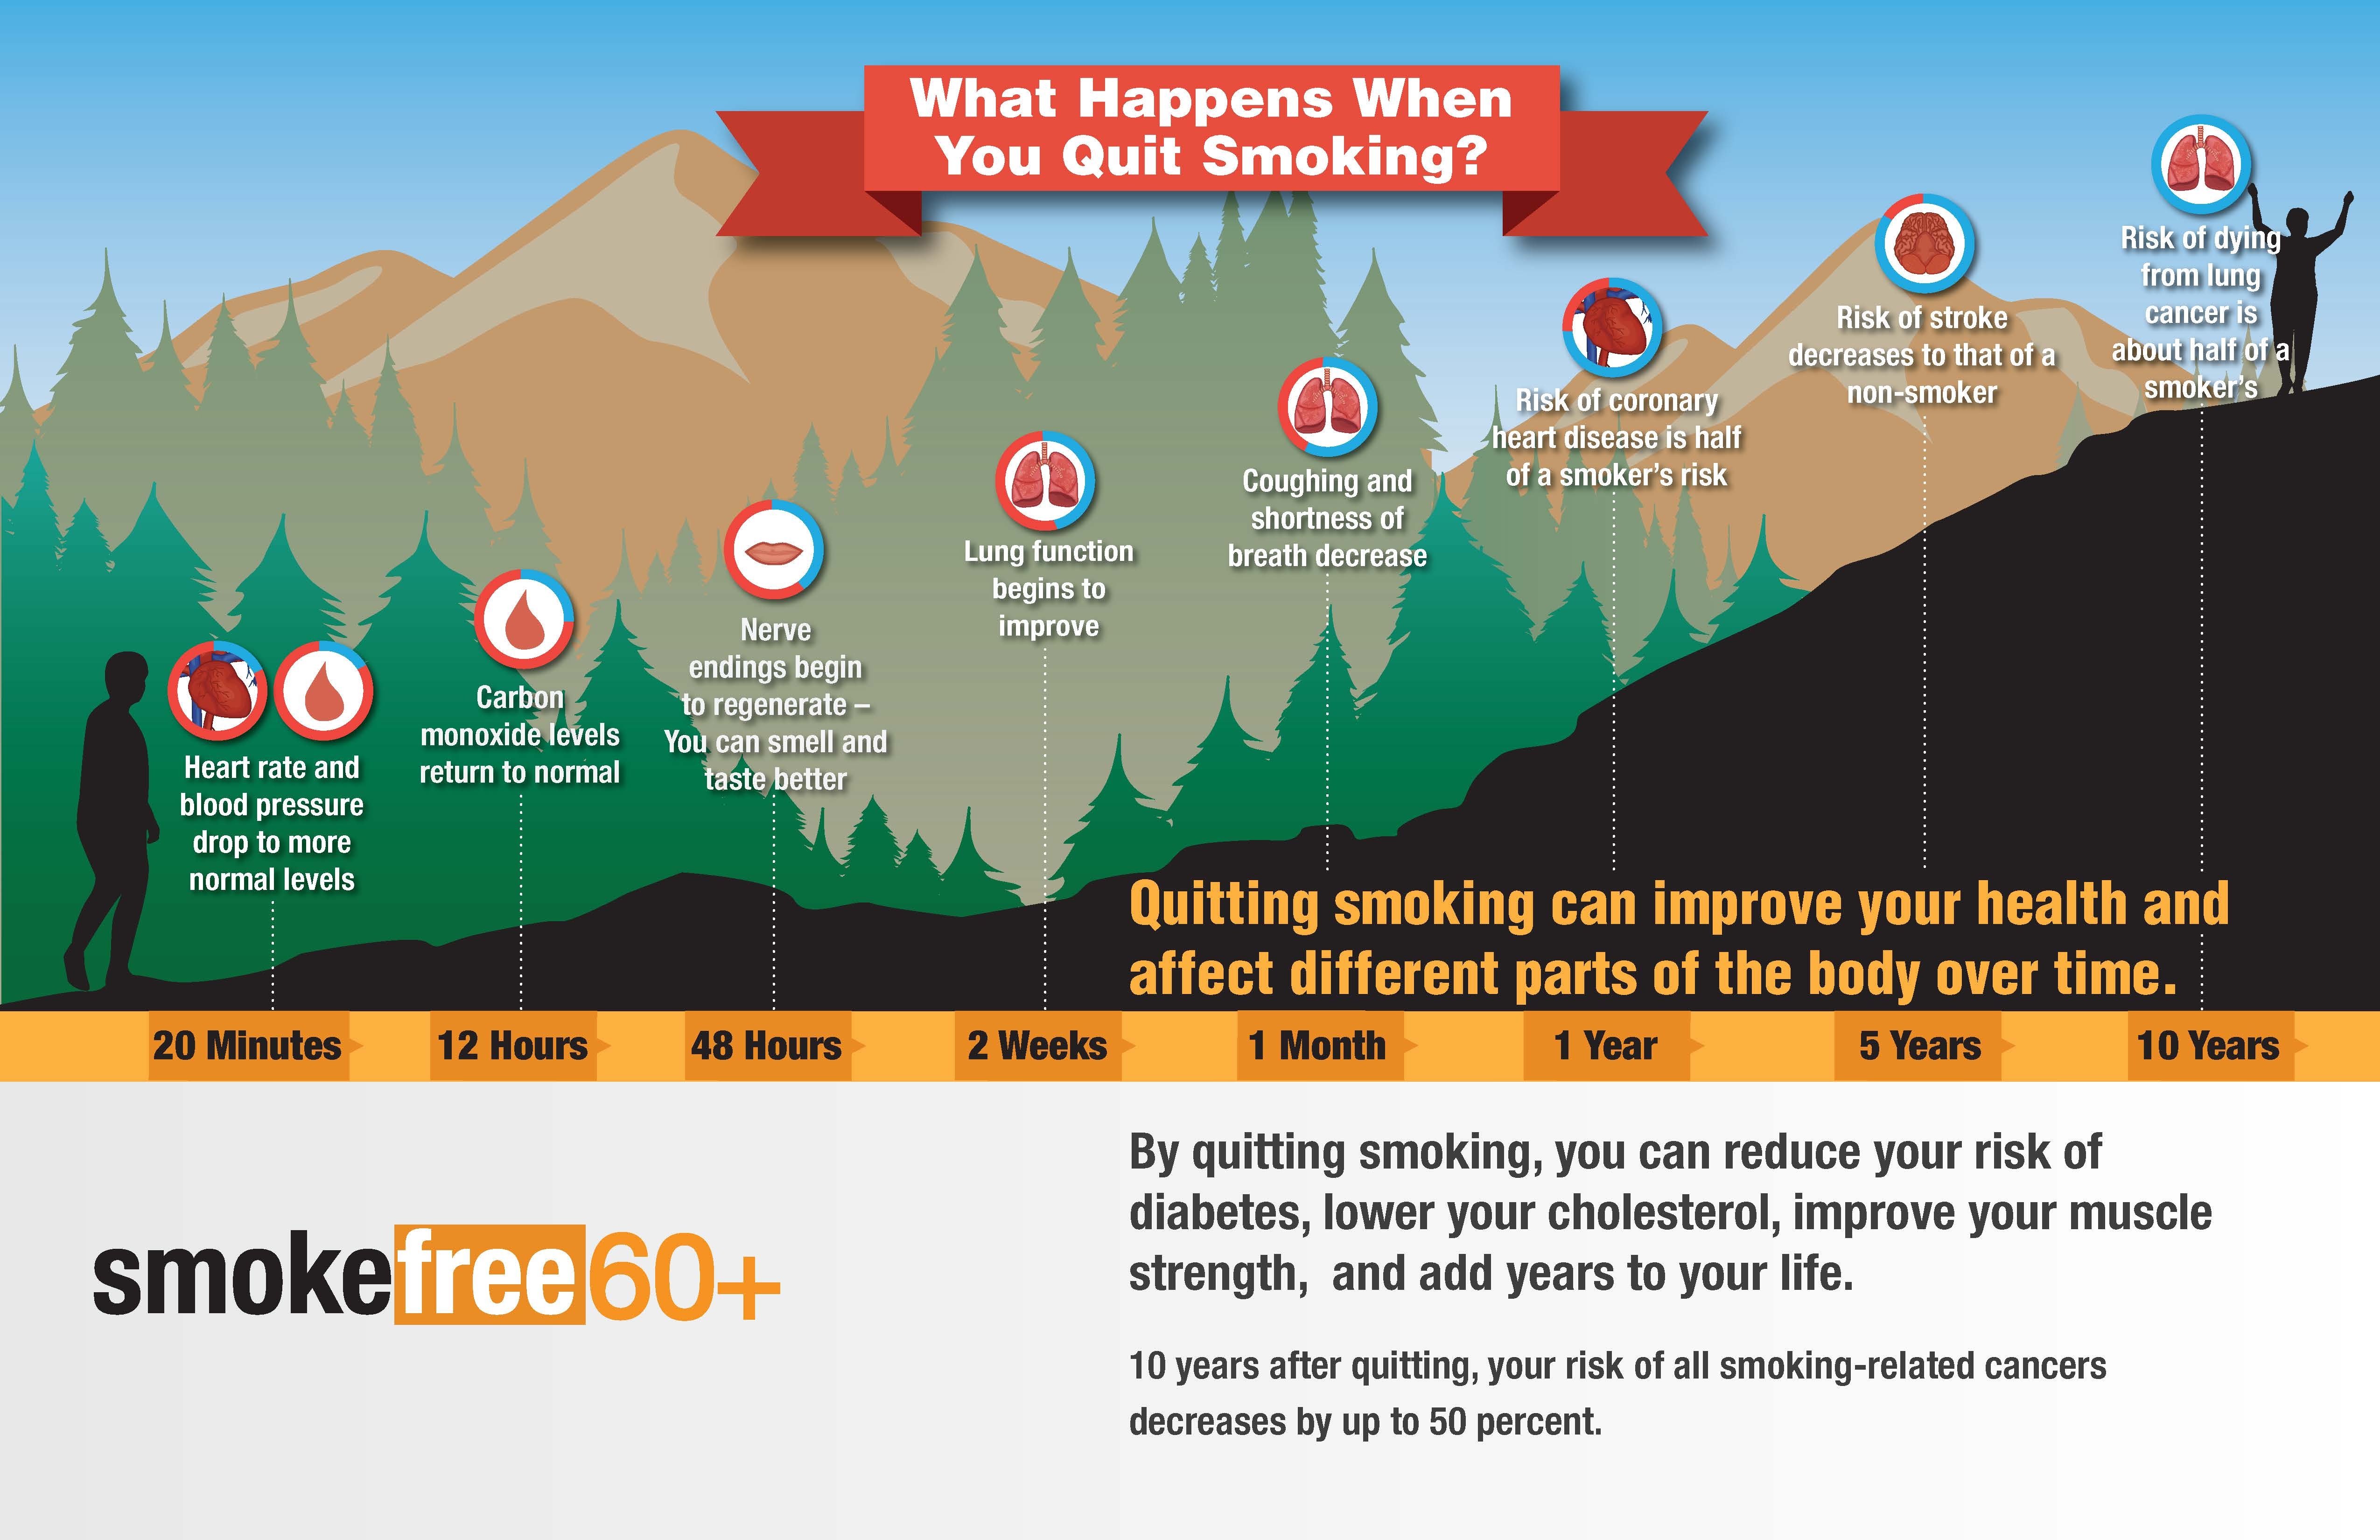 Quit smoking image